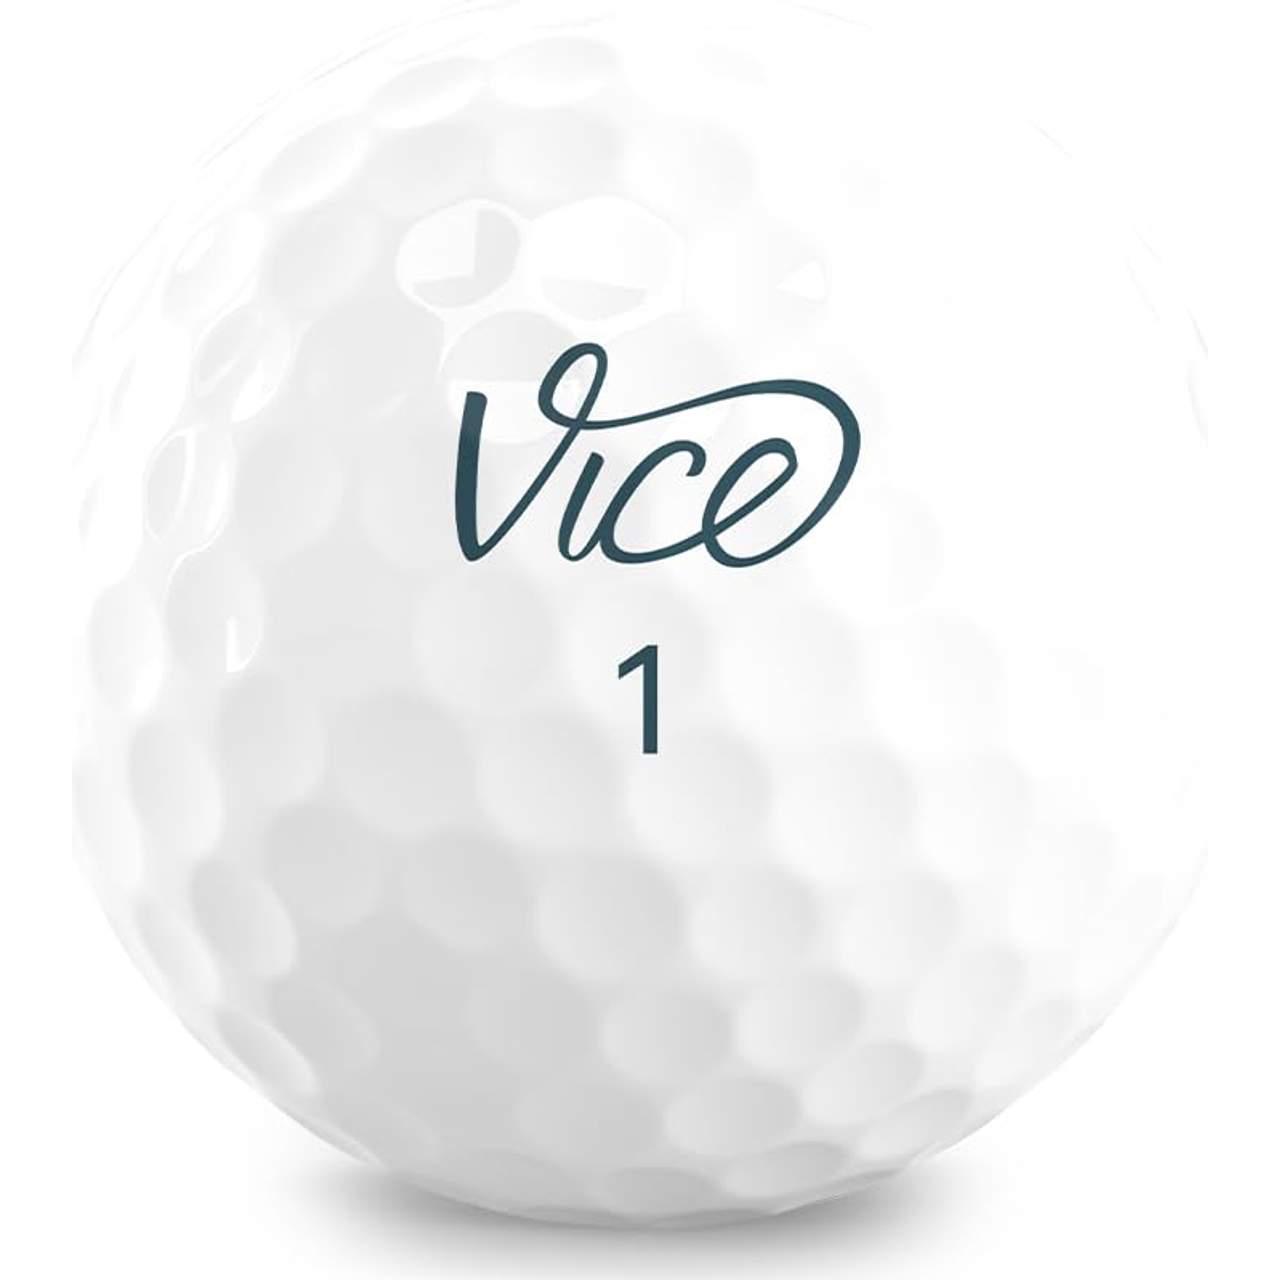 Vice Golf Tour 